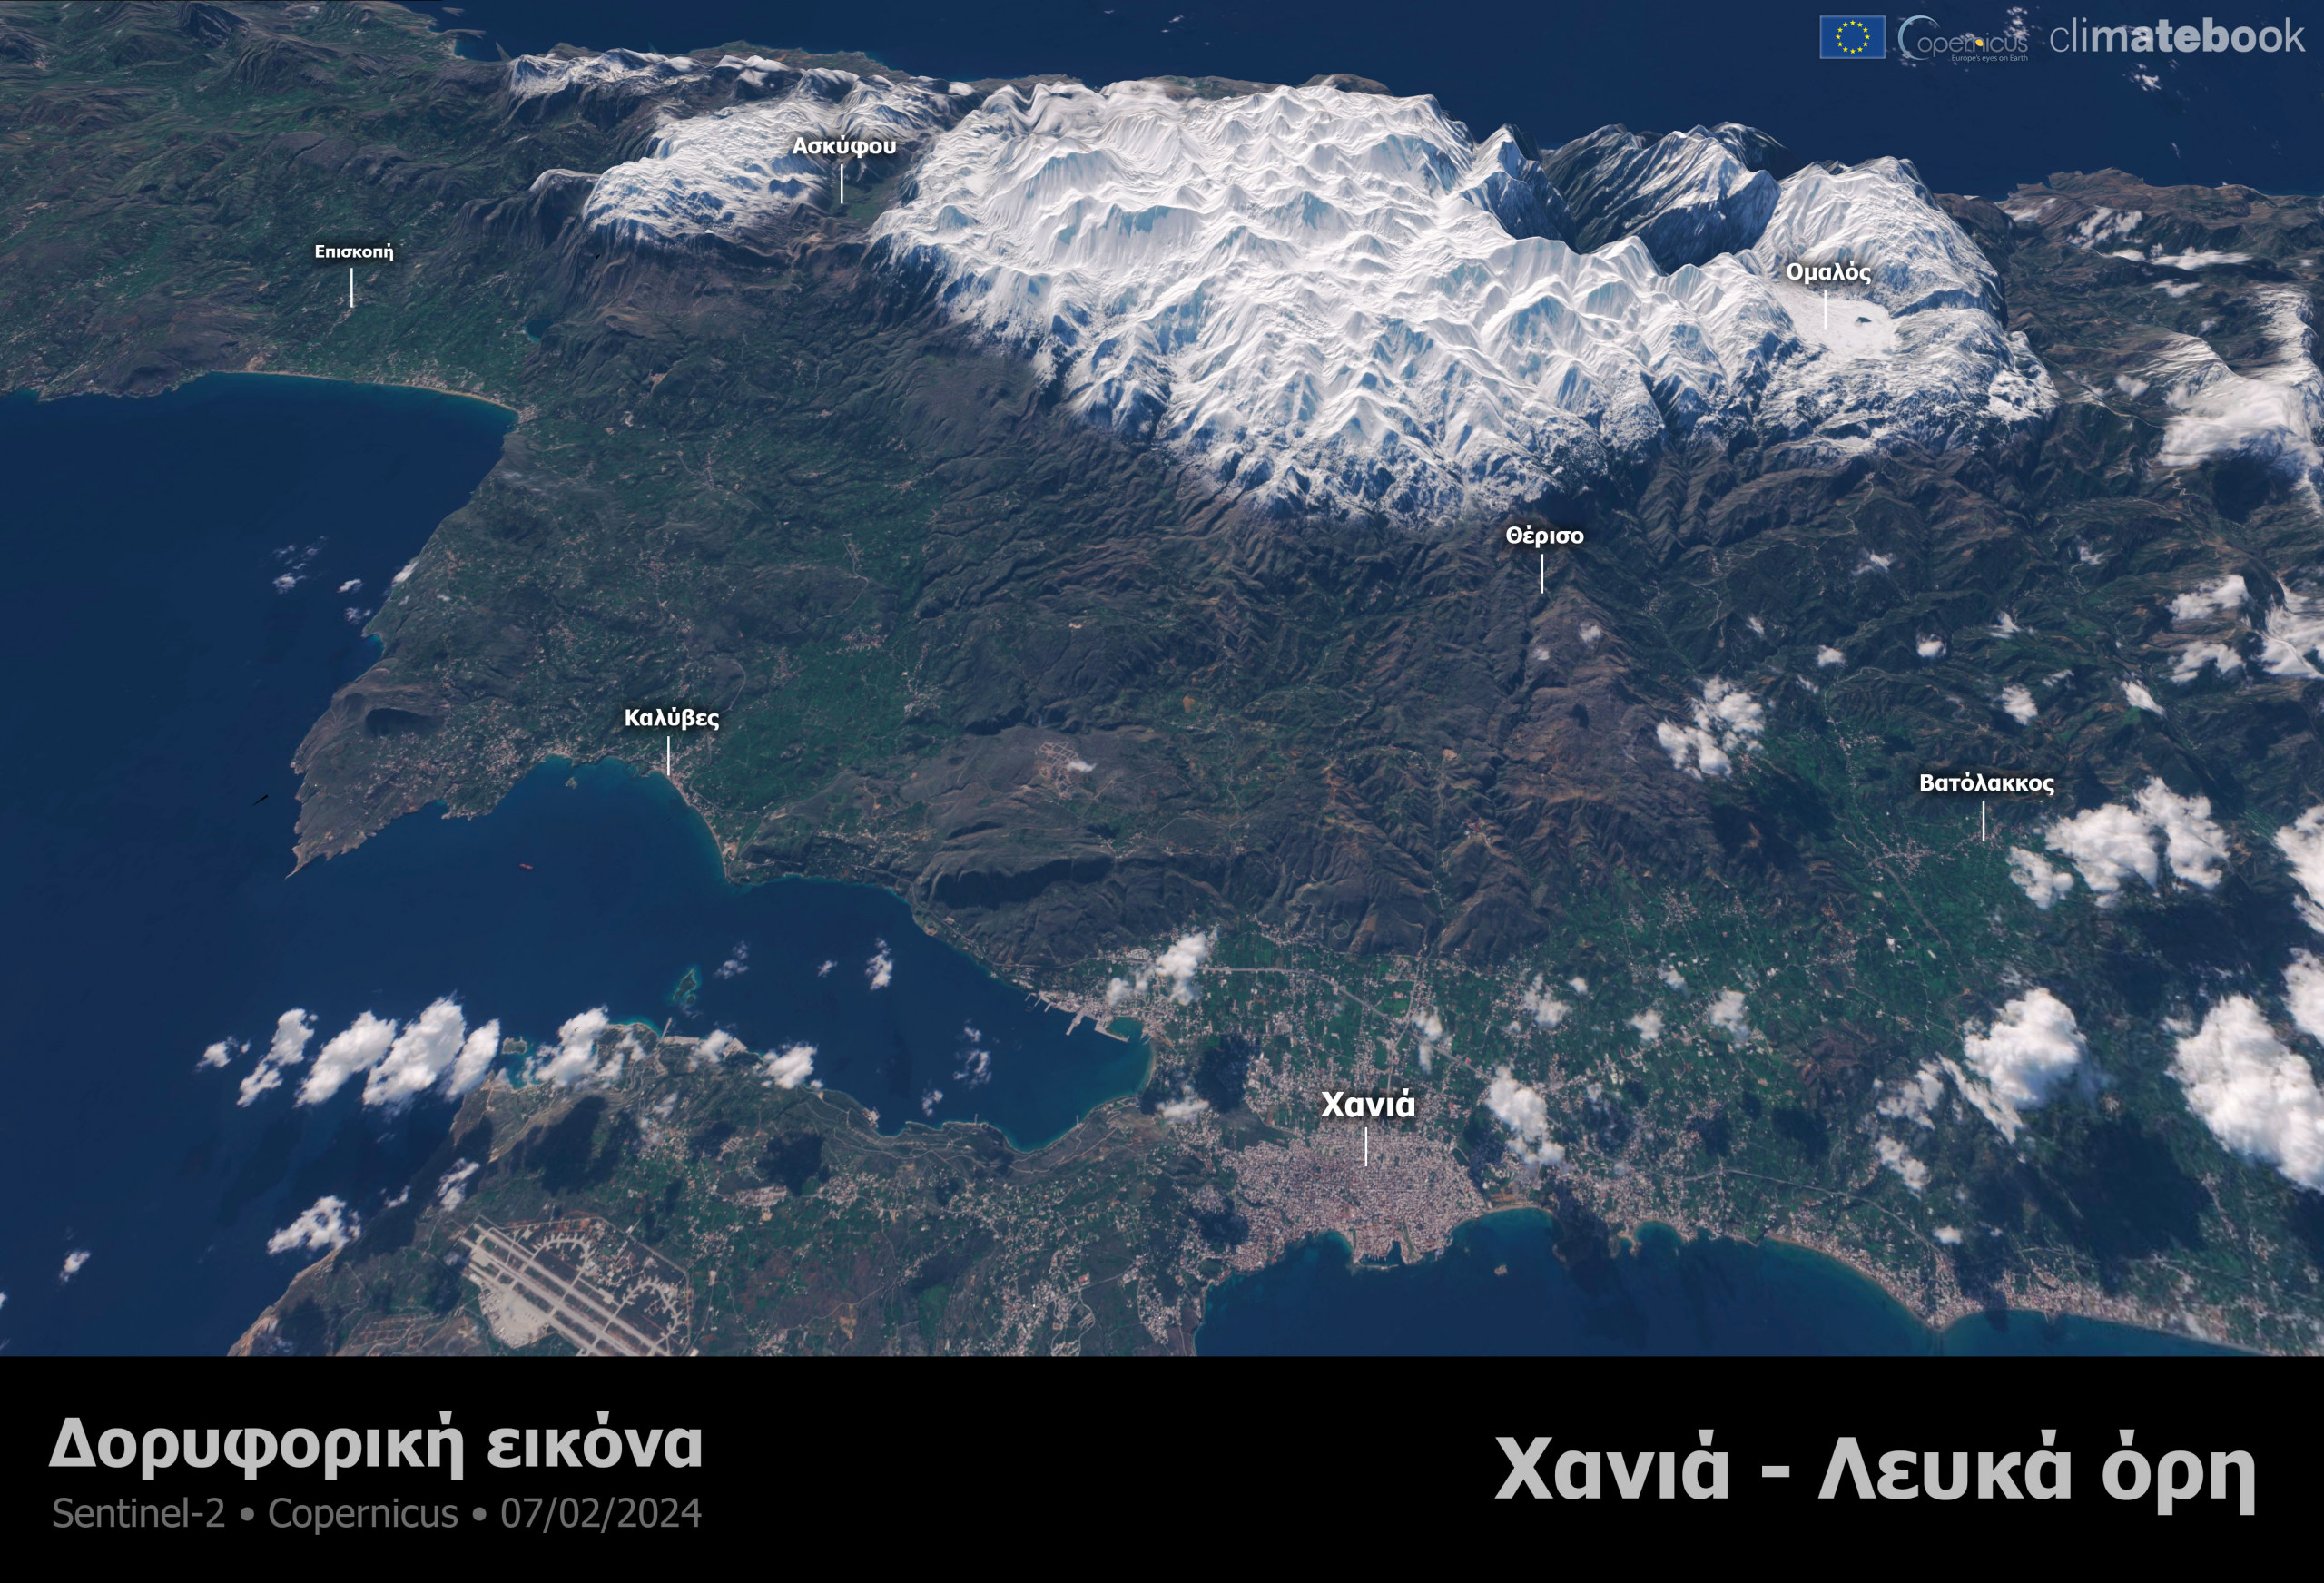 Εικόνα 1. Δορυφορική εικόνα πάνω από τα Λευκά Όρη της Κρήτης στα Χανιά στις αρχές Φεβρουαρίου 2024. Πηγή δεδομένων: Sentinel-2. Επεξεργασία & οπτικοποίηση: Climatebook.gr